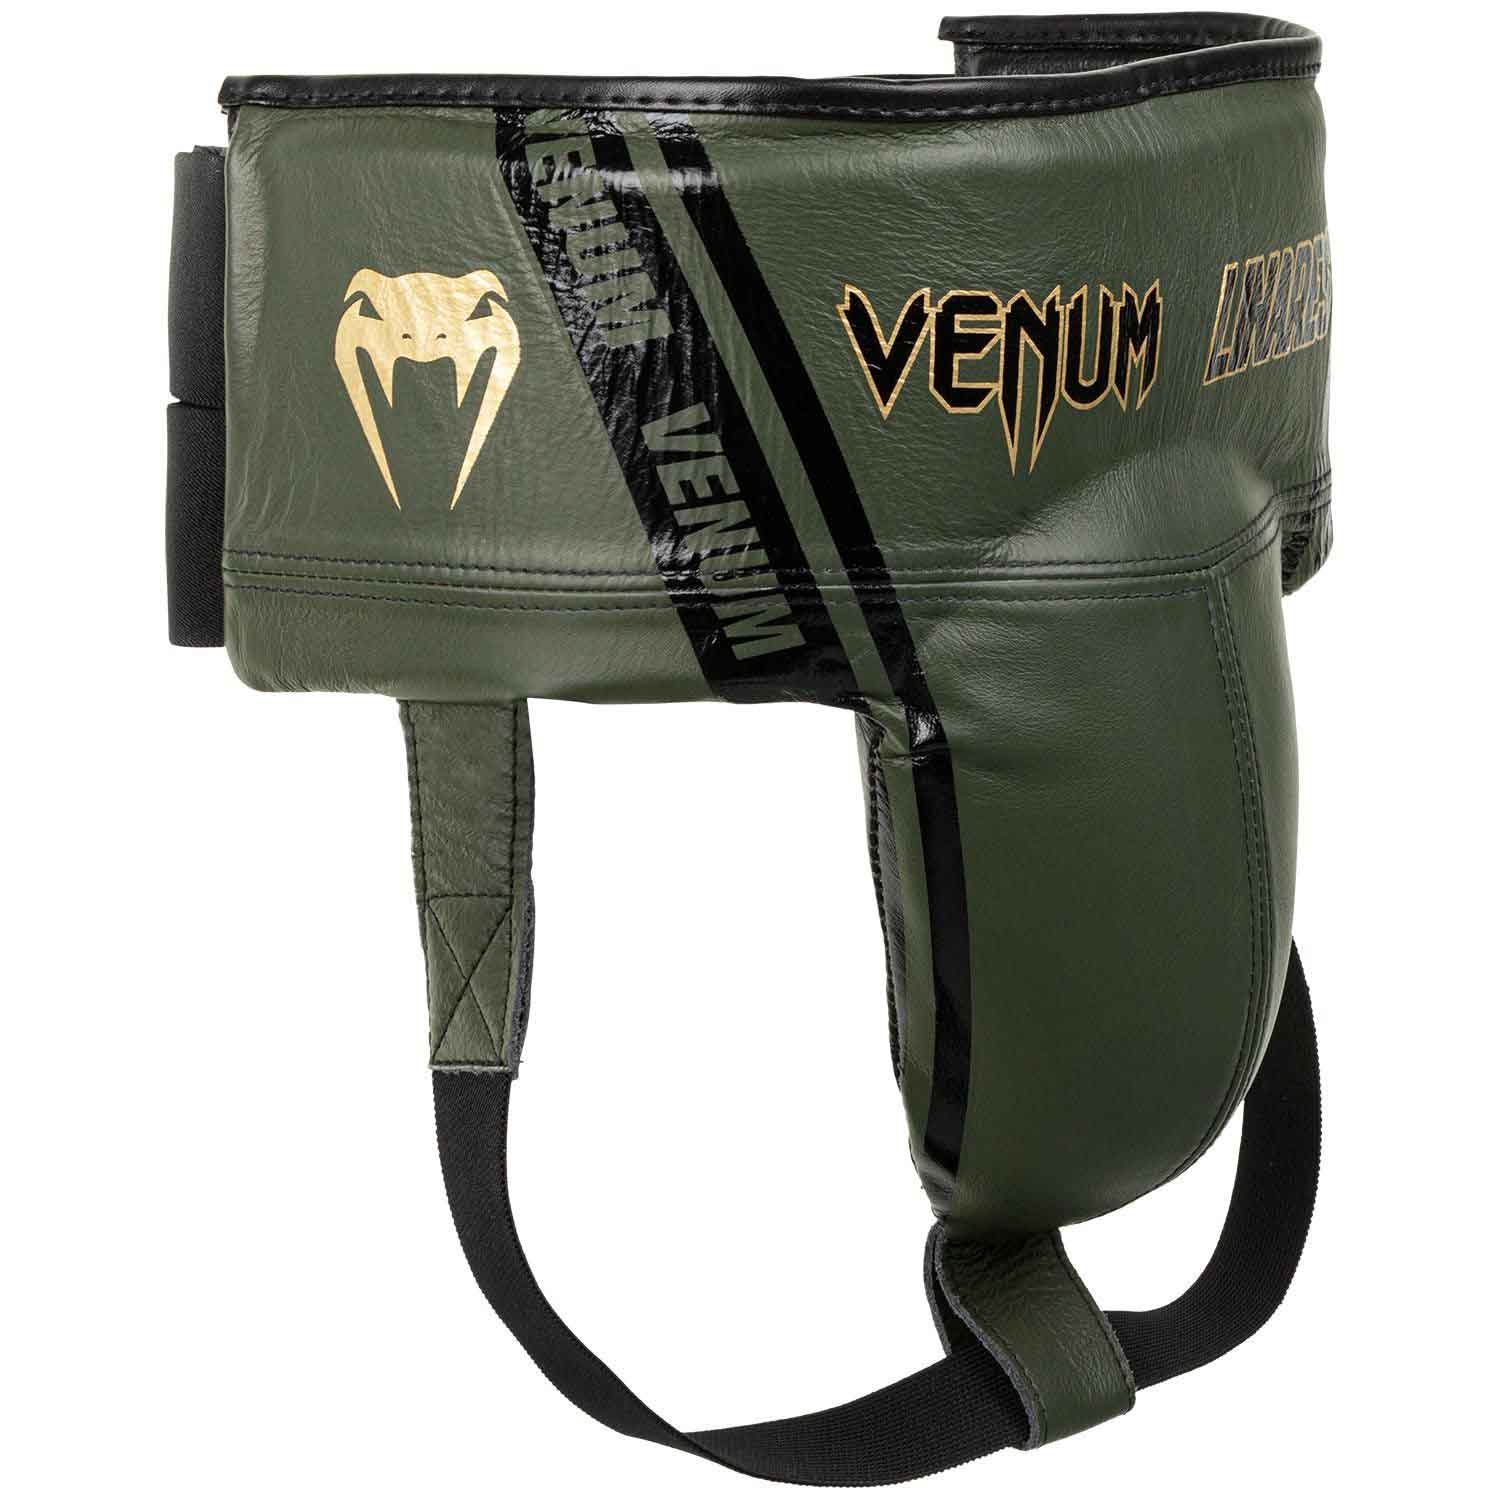 VENUM／ヴェナム　ファイトギア　　PRO BOXING PROTECTIVE CUP LINARES EDITION／プロ ボクシング プロテクティブカップ ホルヘ・リナレス エディション